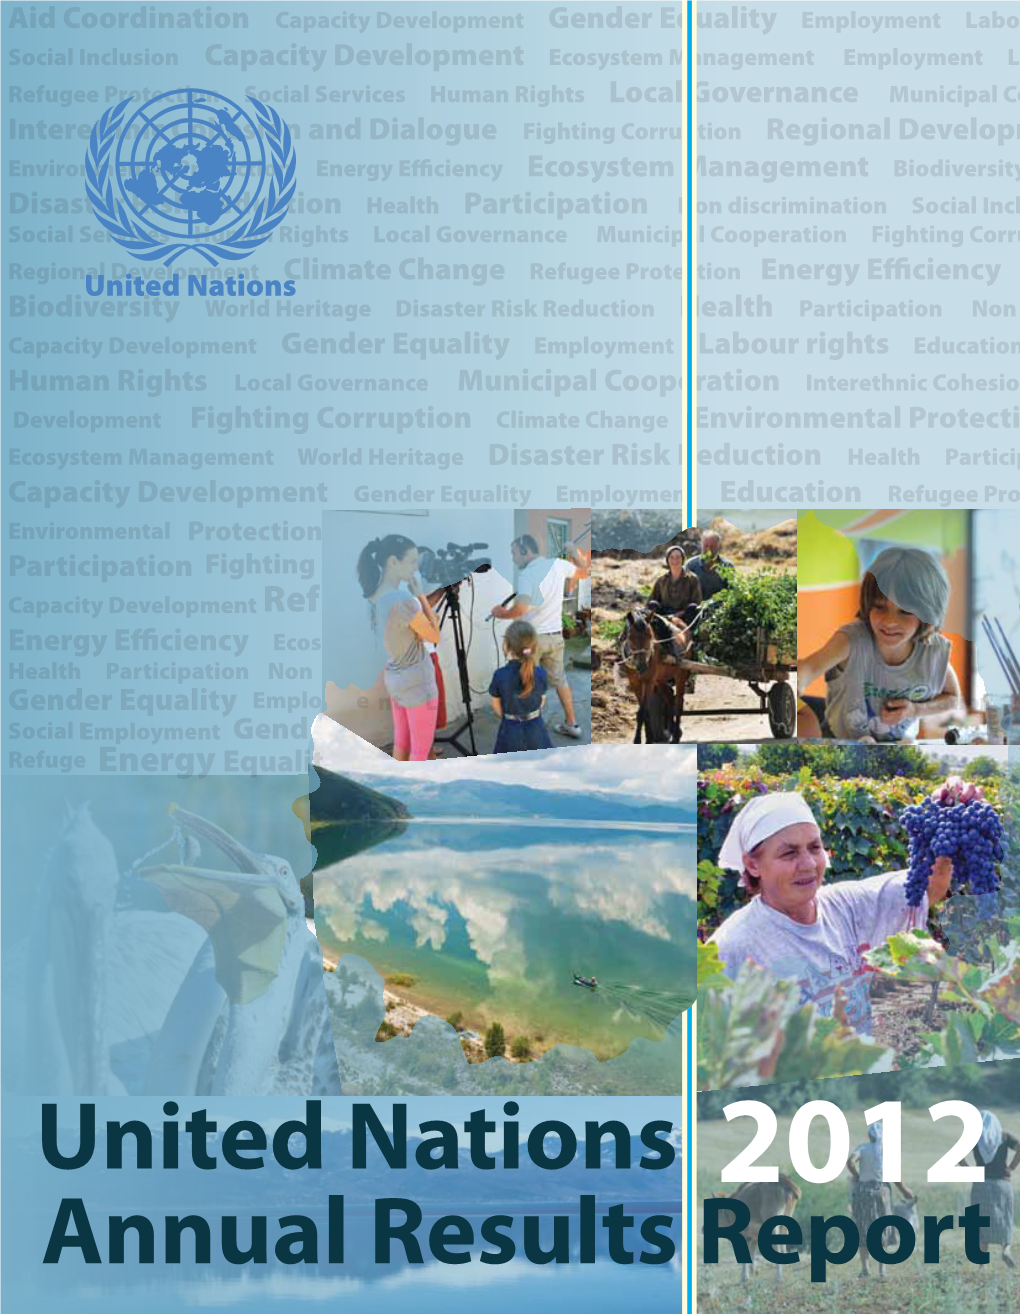 UN Annual Results Report 2012